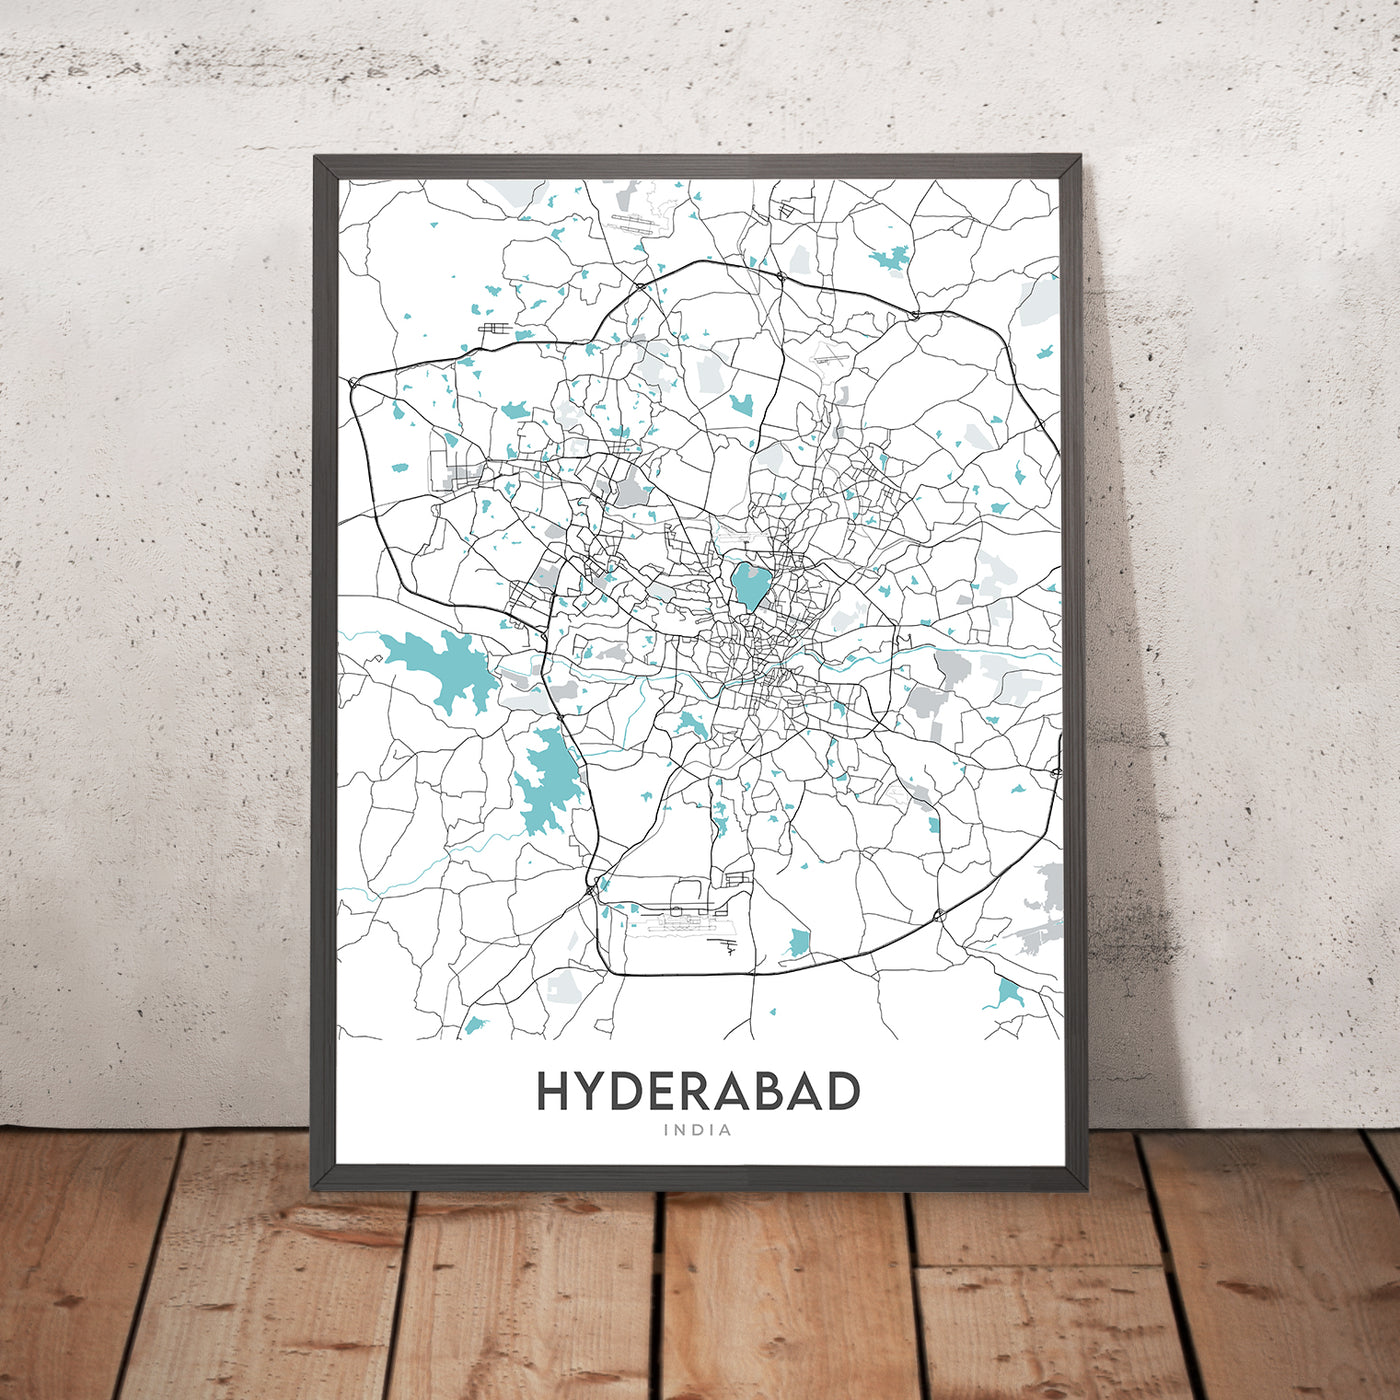 Mapa moderno de la ciudad de Hyderabad, India: Banjara Hills, HITEC City, Hussain Sagar, KBR Park, Old Mumbai Hwy